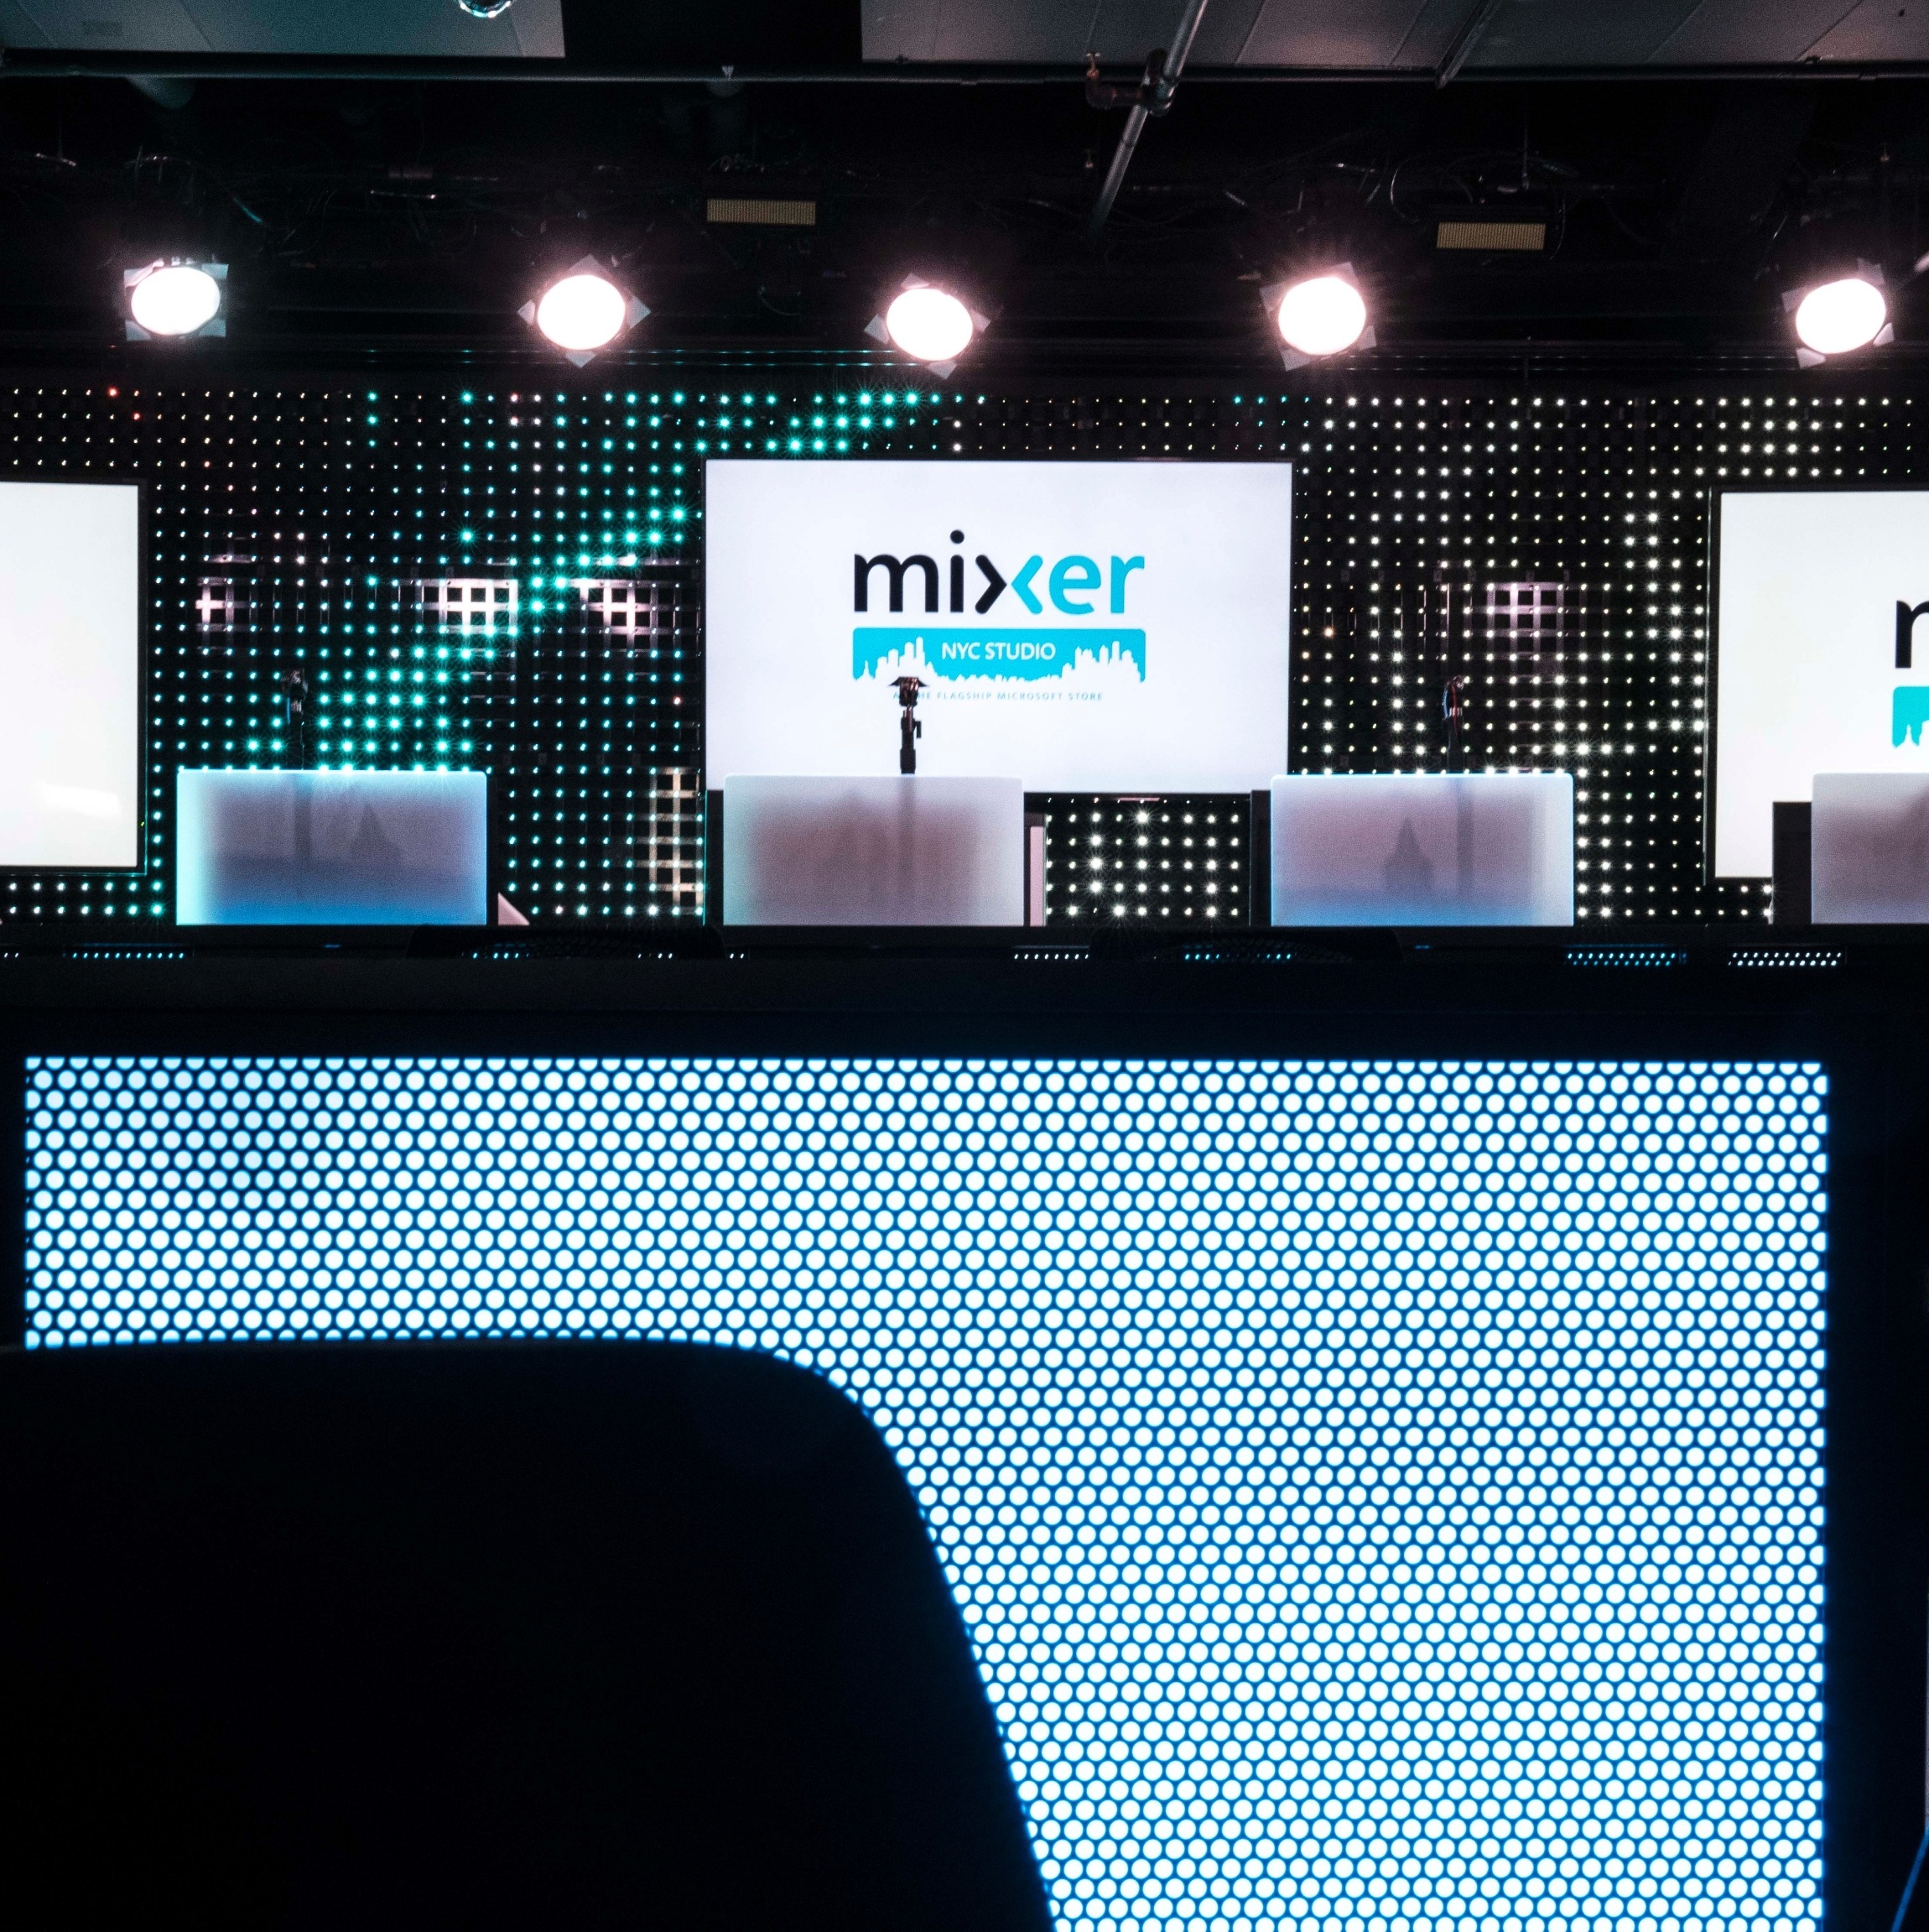 Mixer é o novo nome da plataforma de streaming da Microsoft